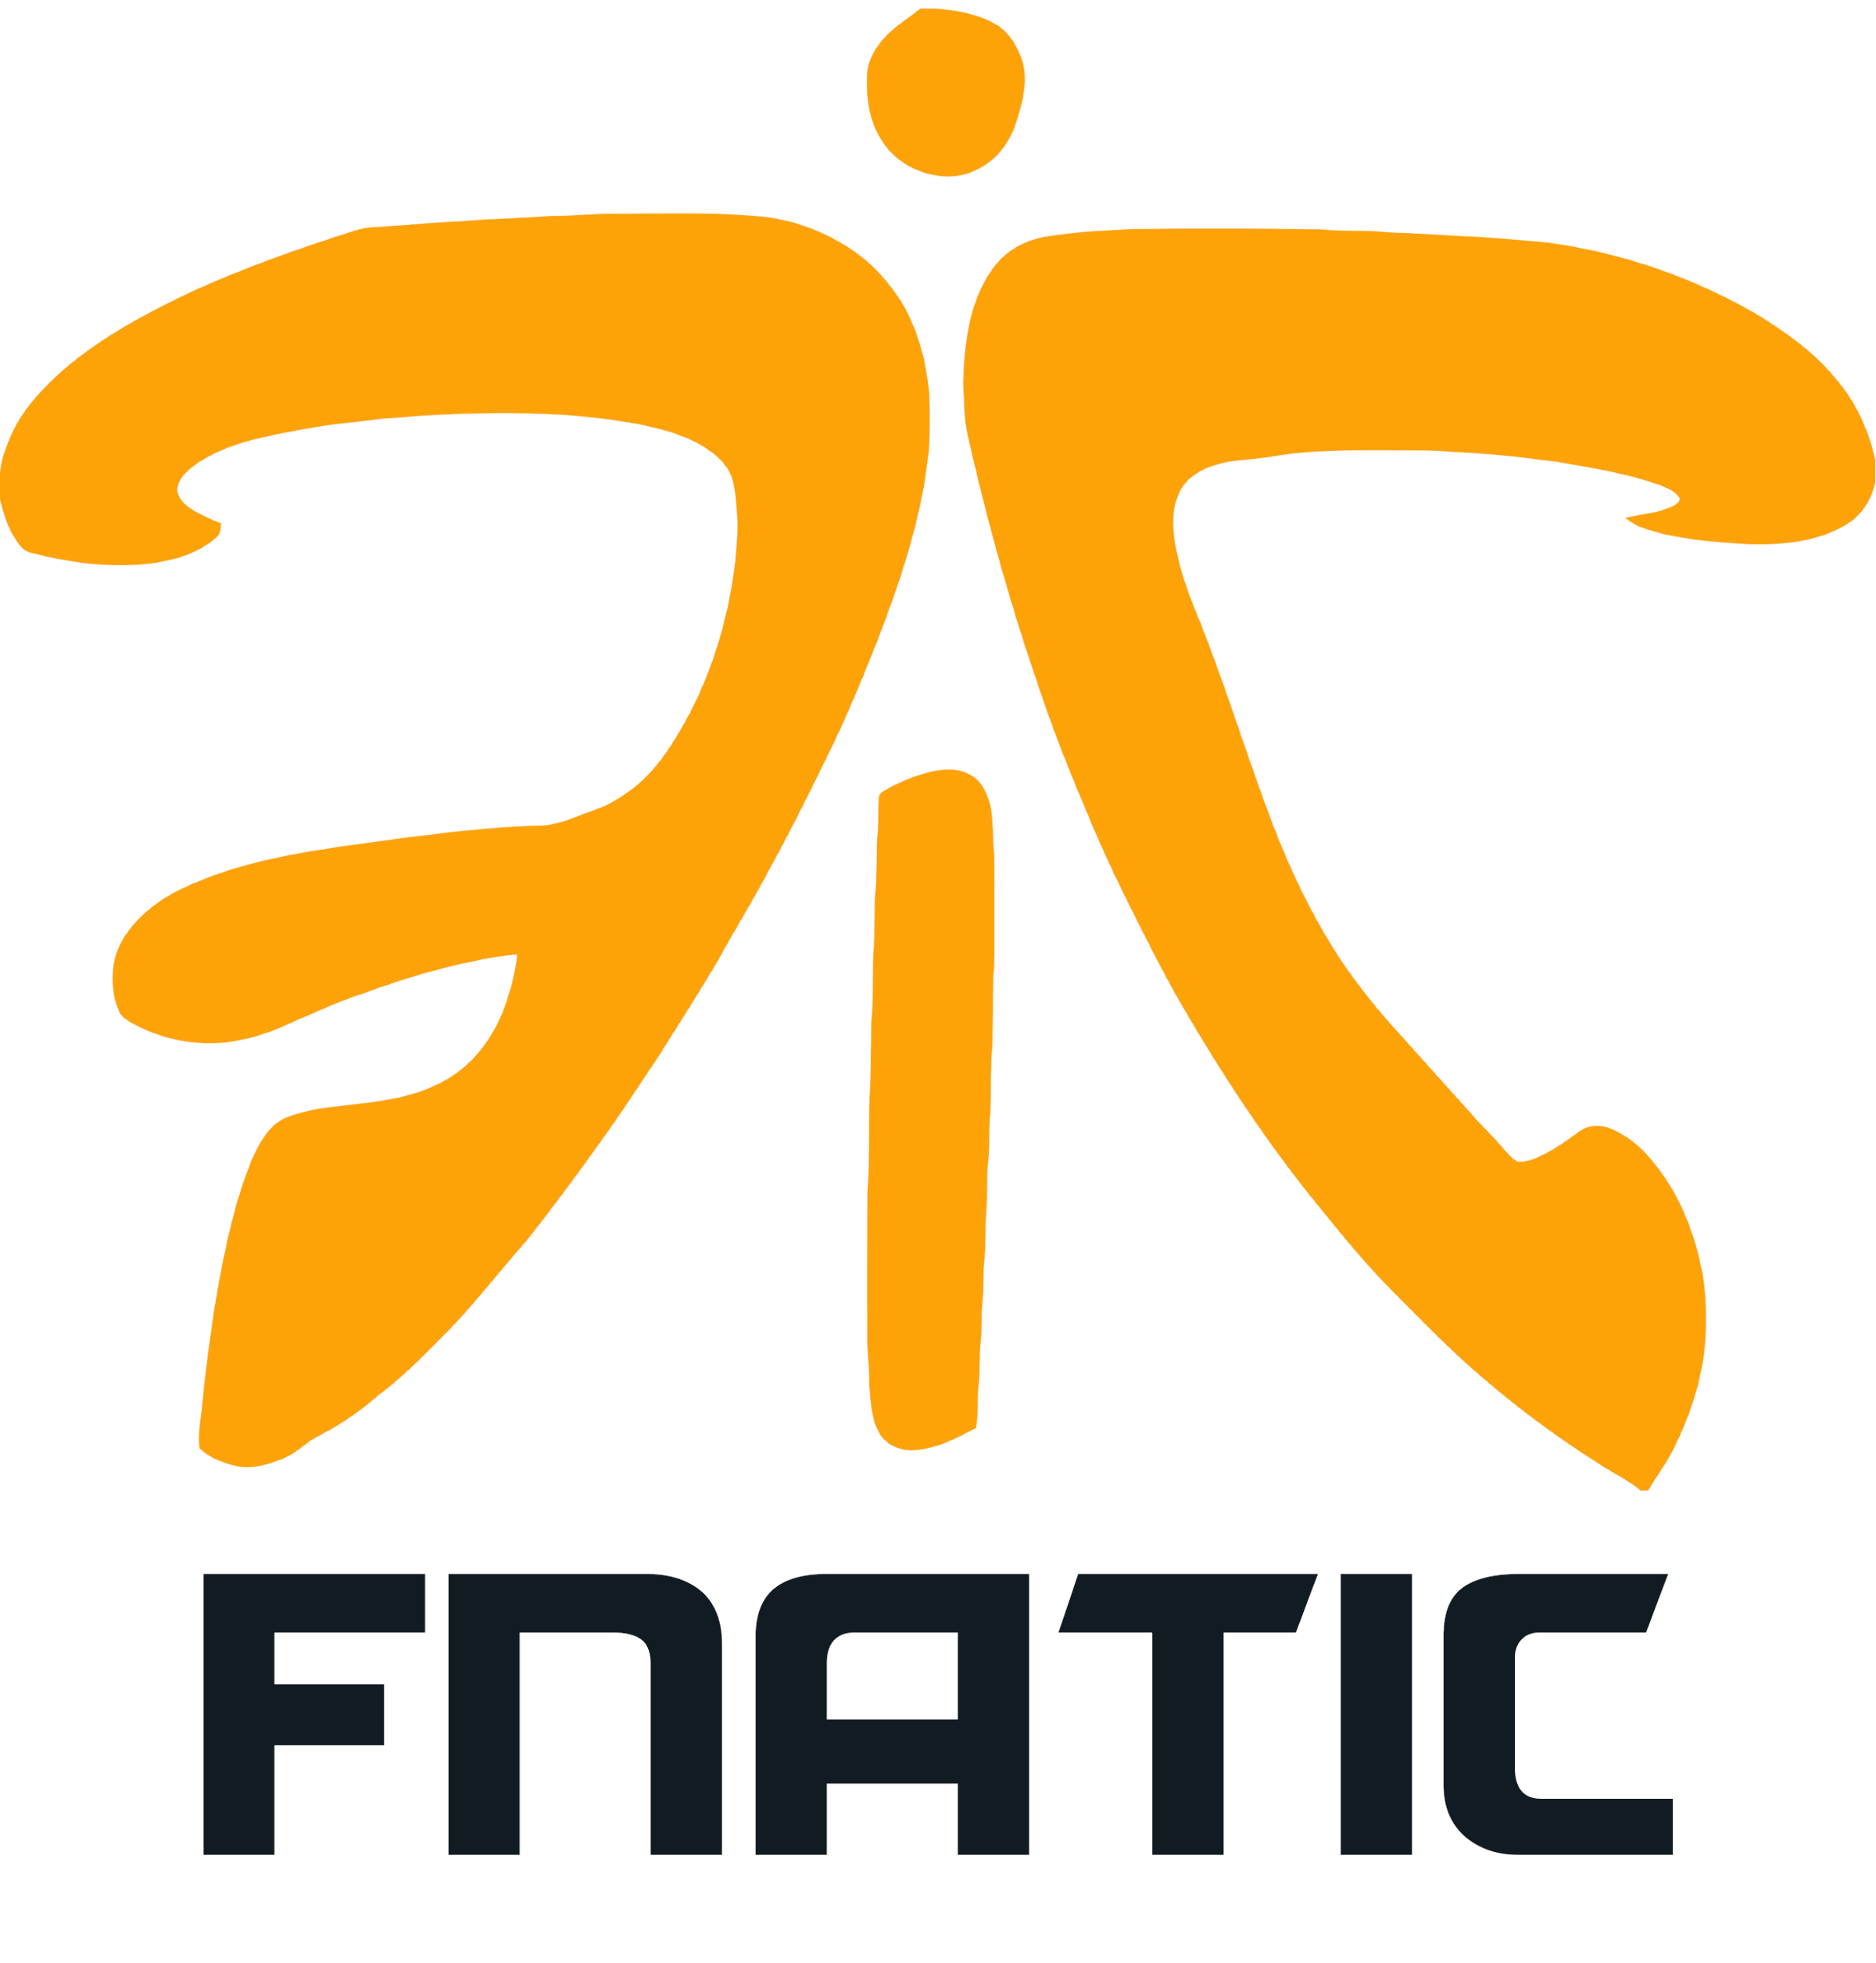 Fnatic_logo_wordmark.png